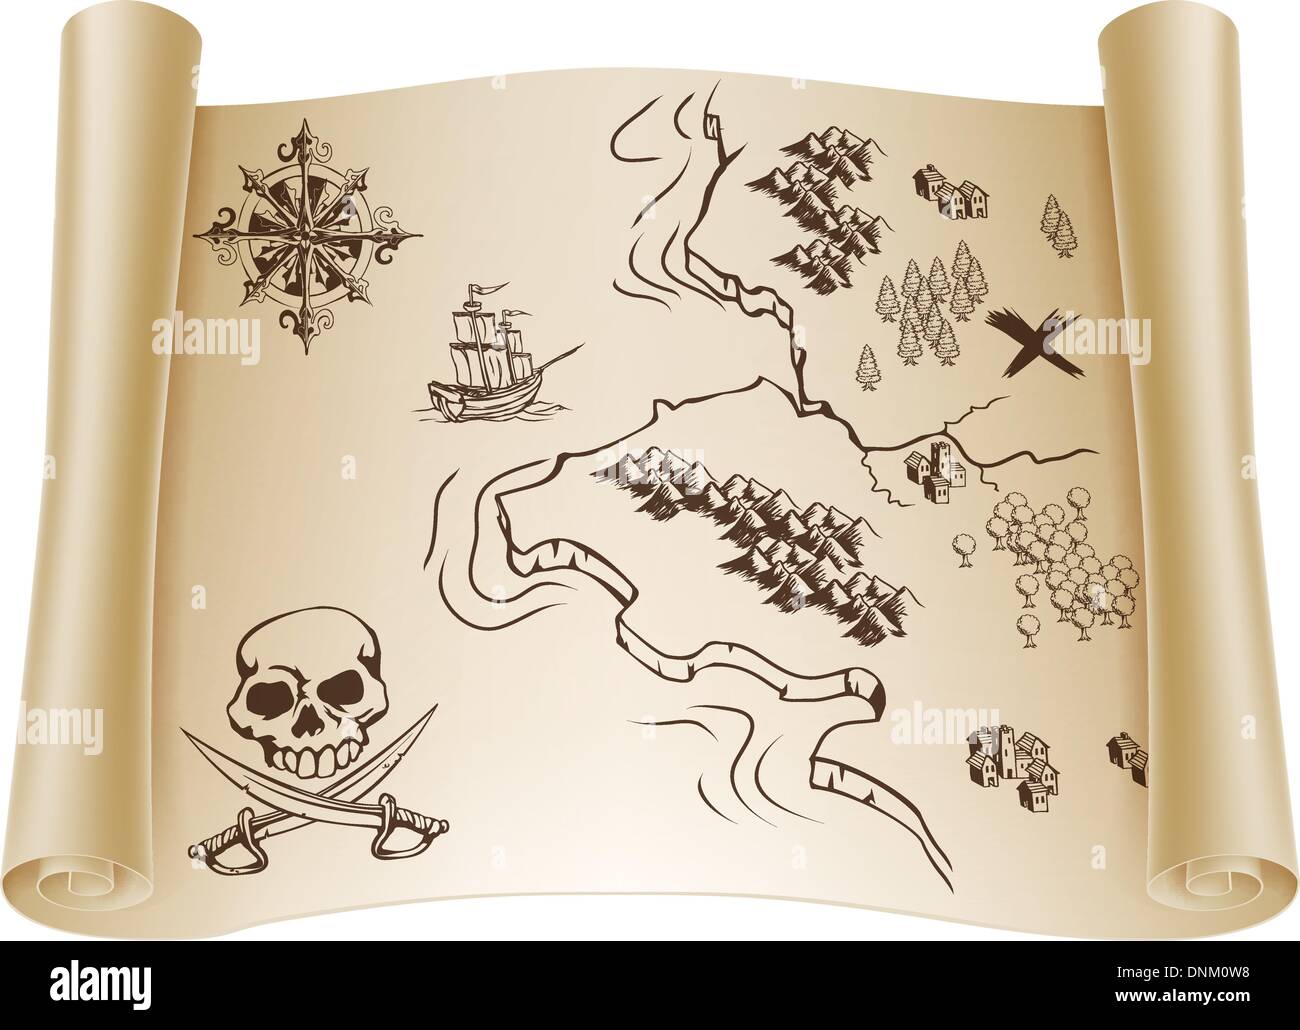 Une illustration d'une vieille carte au trésor sur un papier enroulé avec défilement marquant l'endroit x Illustration de Vecteur